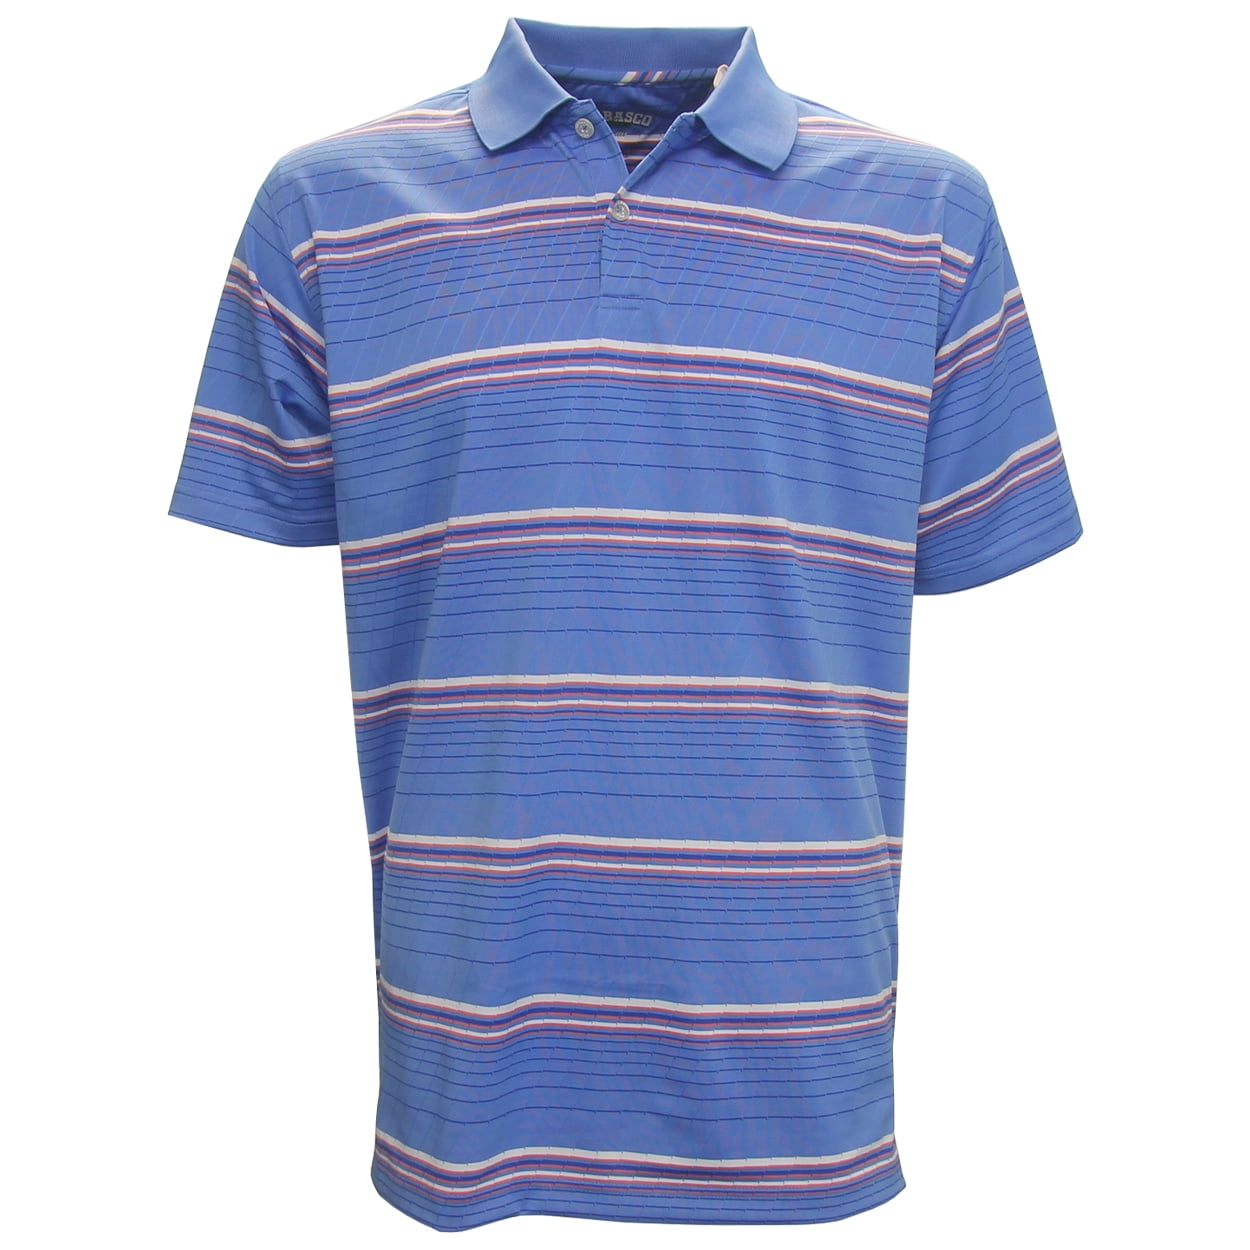 TABASCO - Tabasco Auto Thin Stripe Polo Golf Shirt, BRAND NEW ...